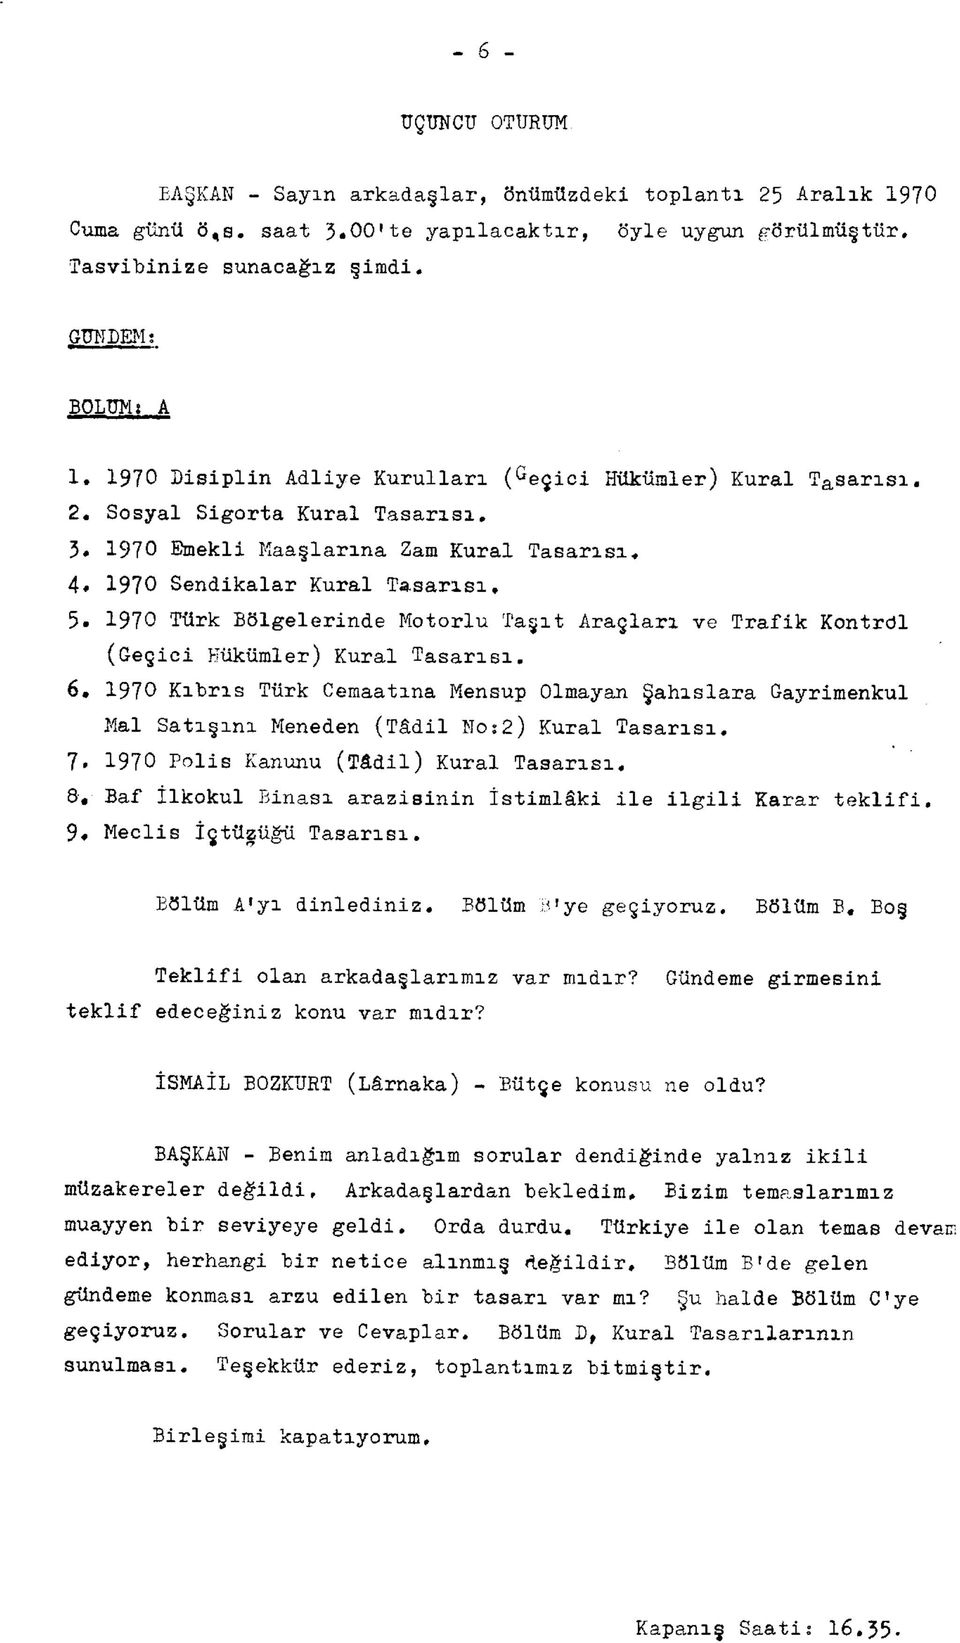 1970 Türk Bölgelerinde Motorlu Taşıt Araçları ve Trafik Kontrdl (Geçici Hükümler) Kural Tasarısı. 6.